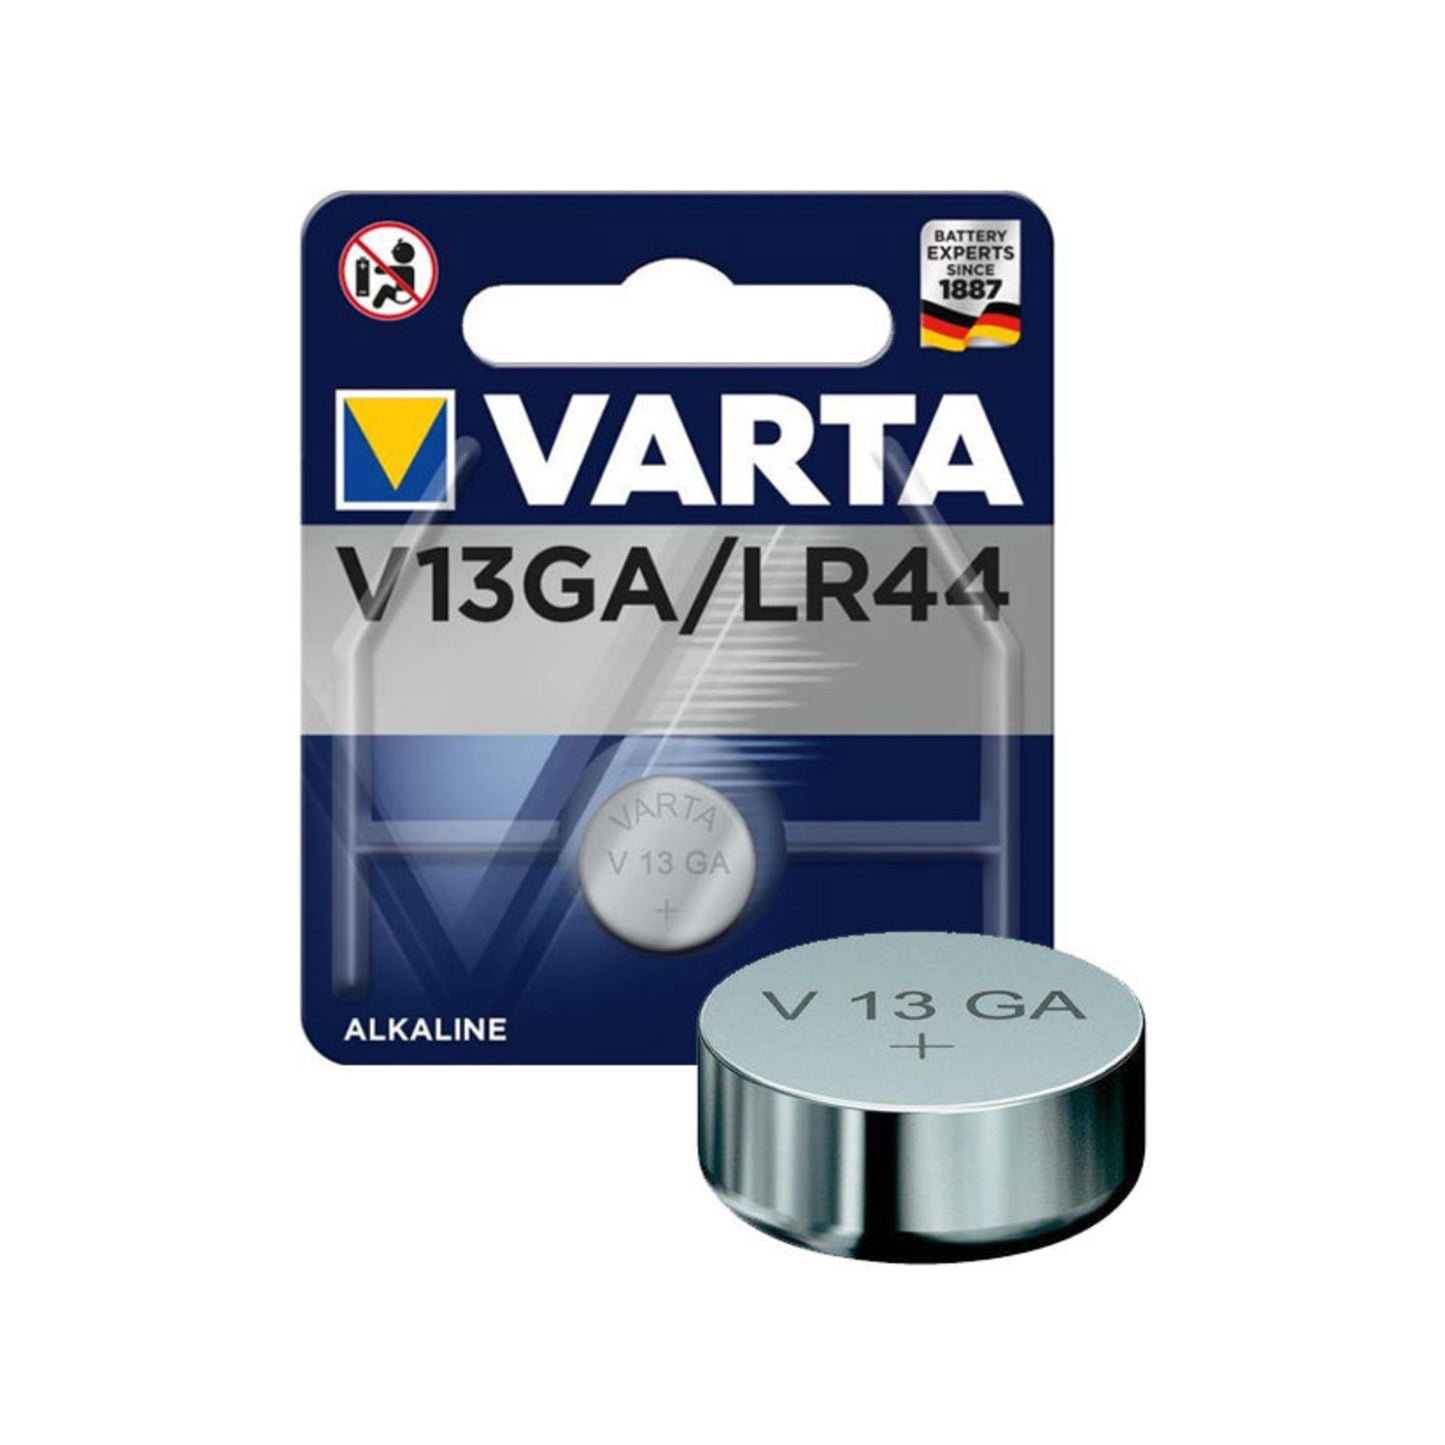 Buy  Varta LR44 V13GA Alkaline Battery at Topic Store